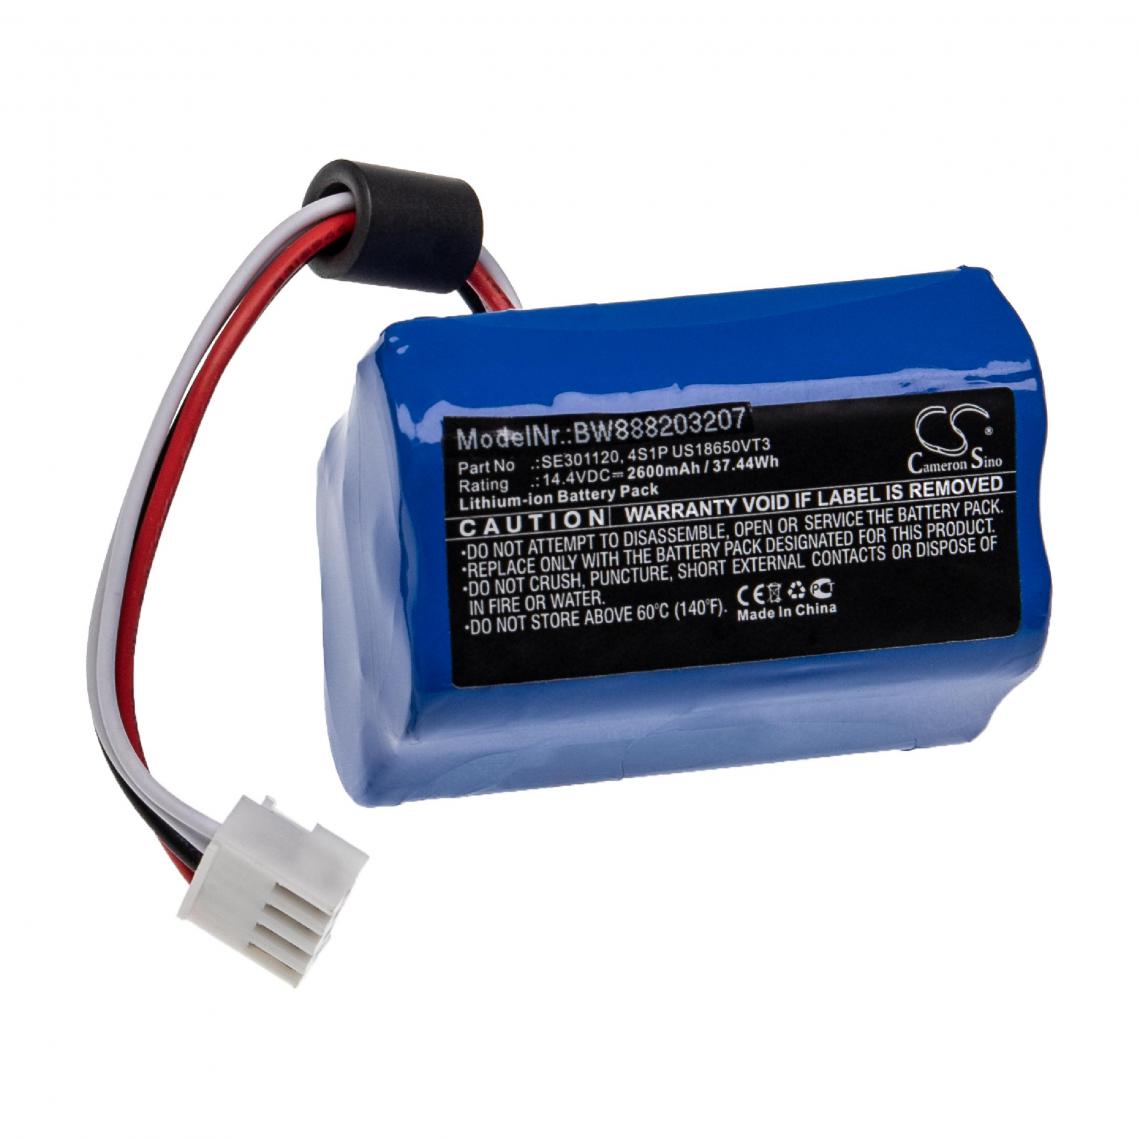 Vhbw - vhbw Batterie compatible avec ResMed Respirateur Stellar 100, 150 appareil médical (2600mAh, 14,4V, Li-ion) - Piles spécifiques